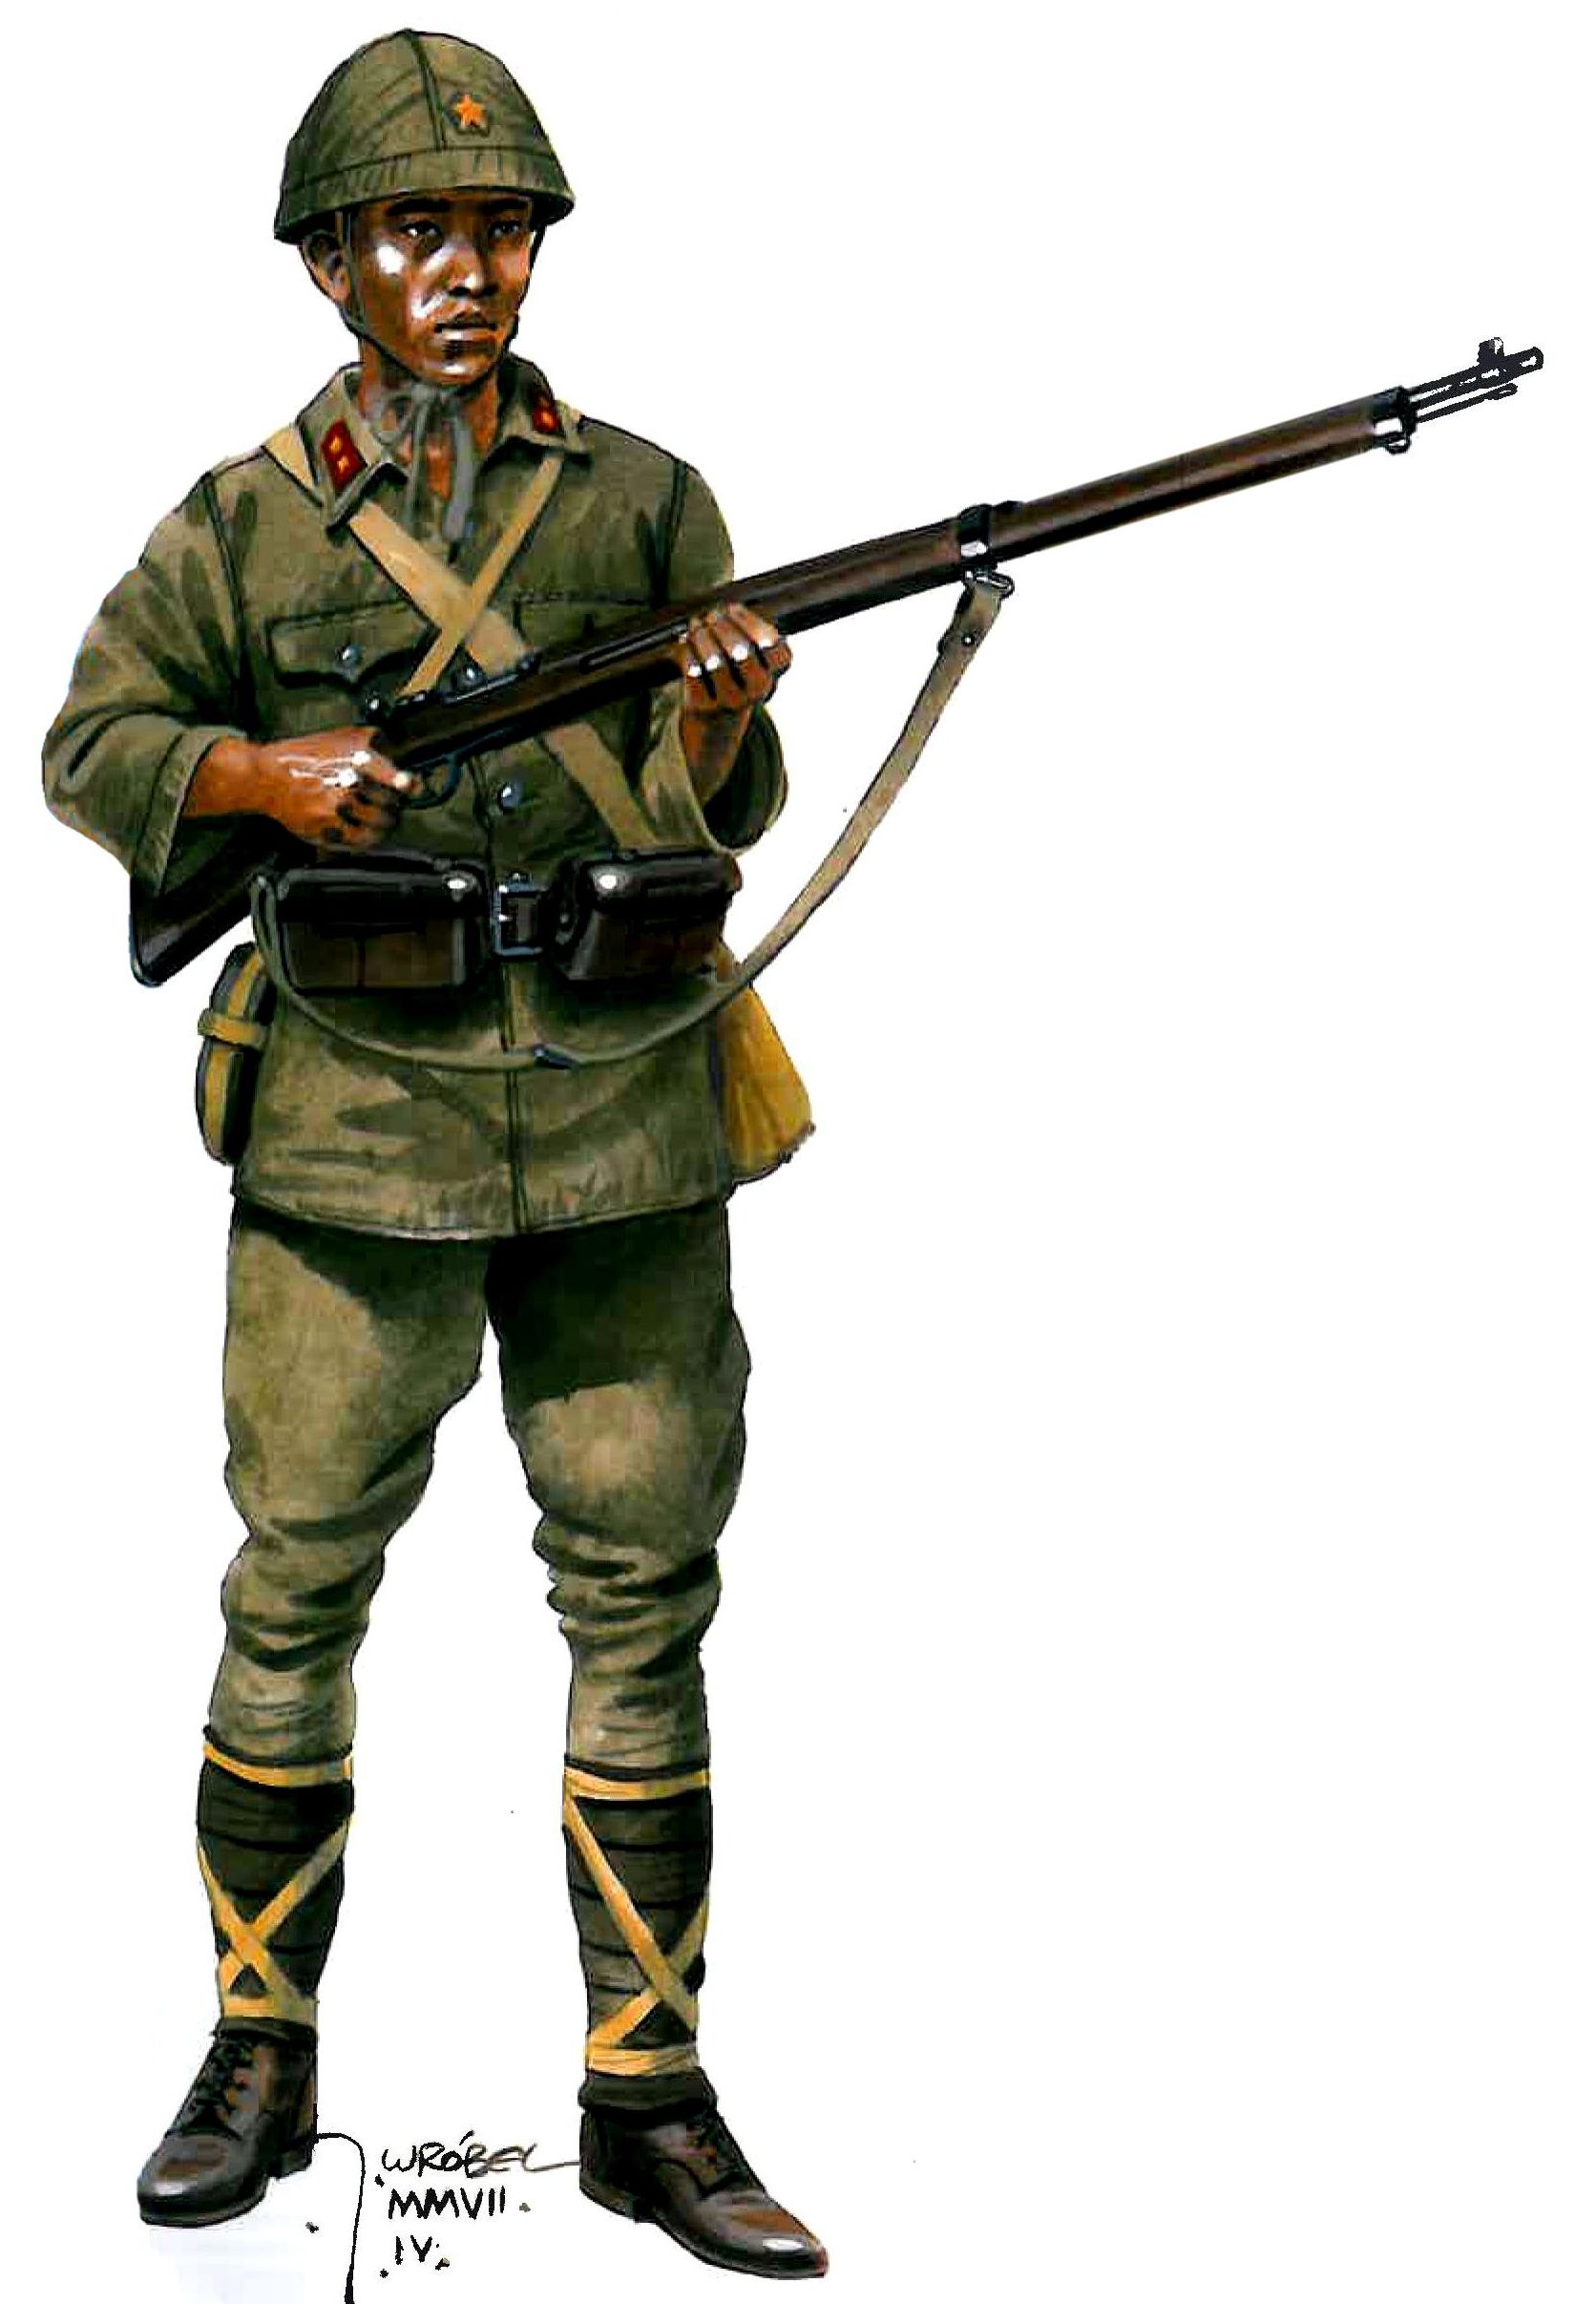 Wrobel Jaroslaw. Японский солдат.